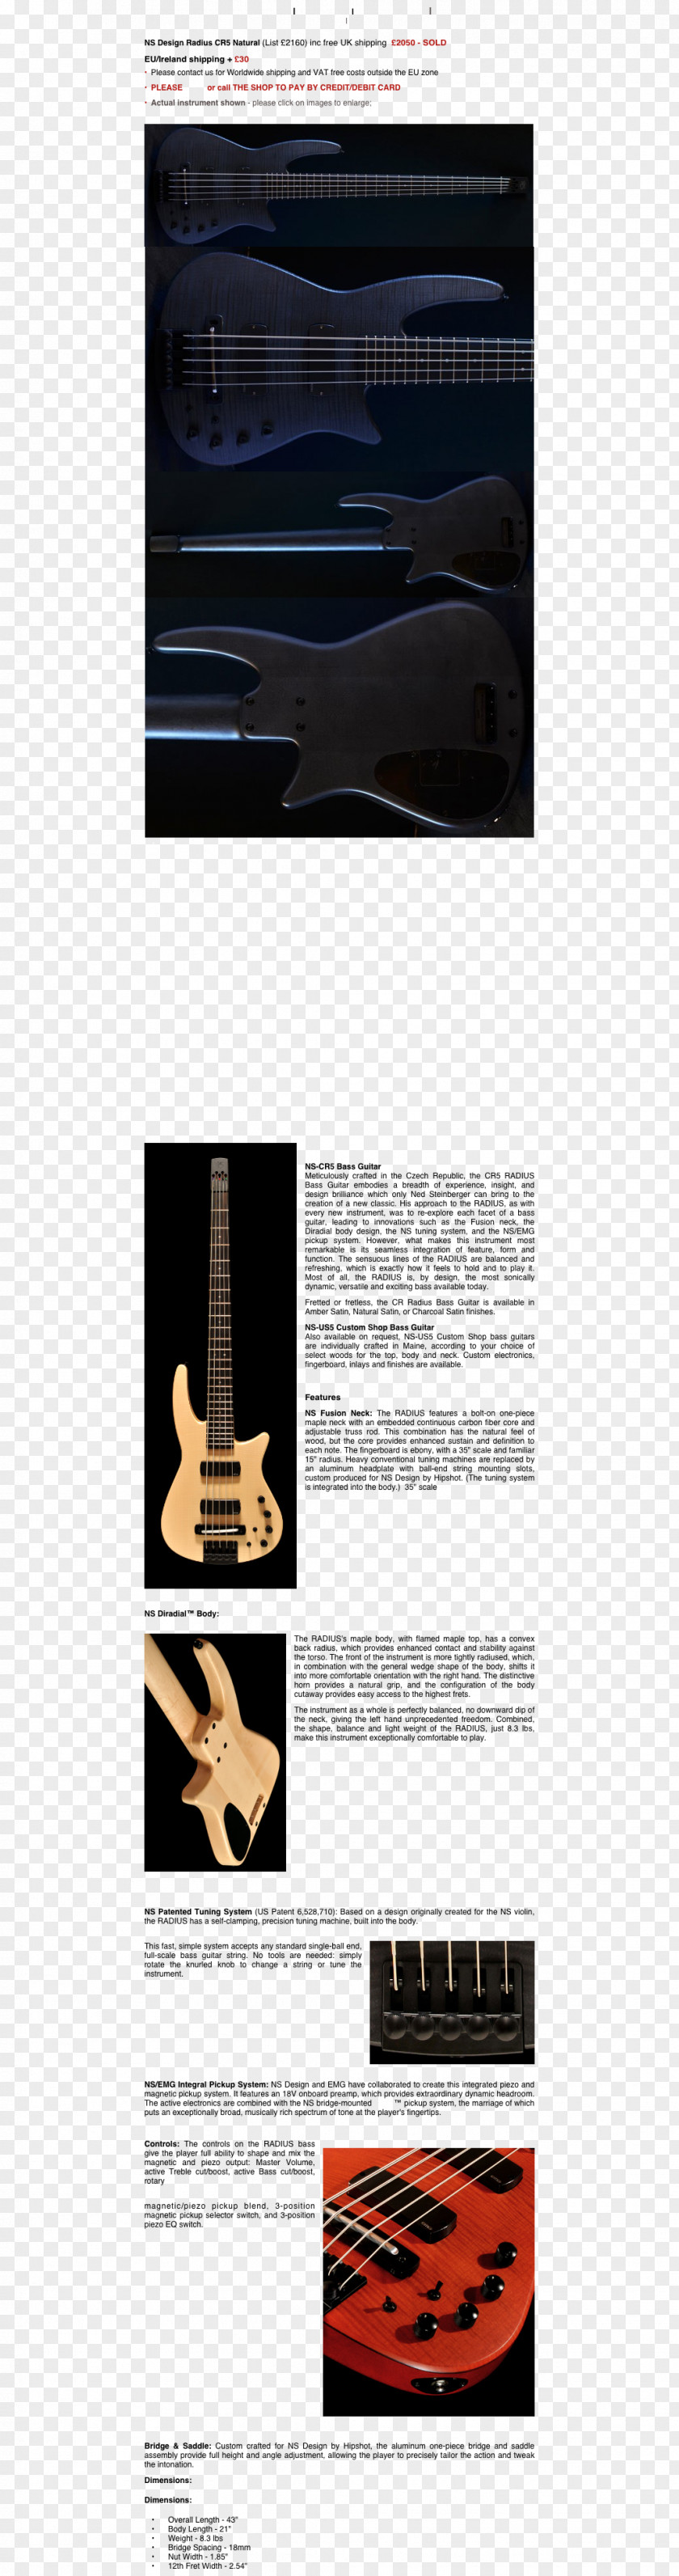 Bass Guitar Brand Font PNG